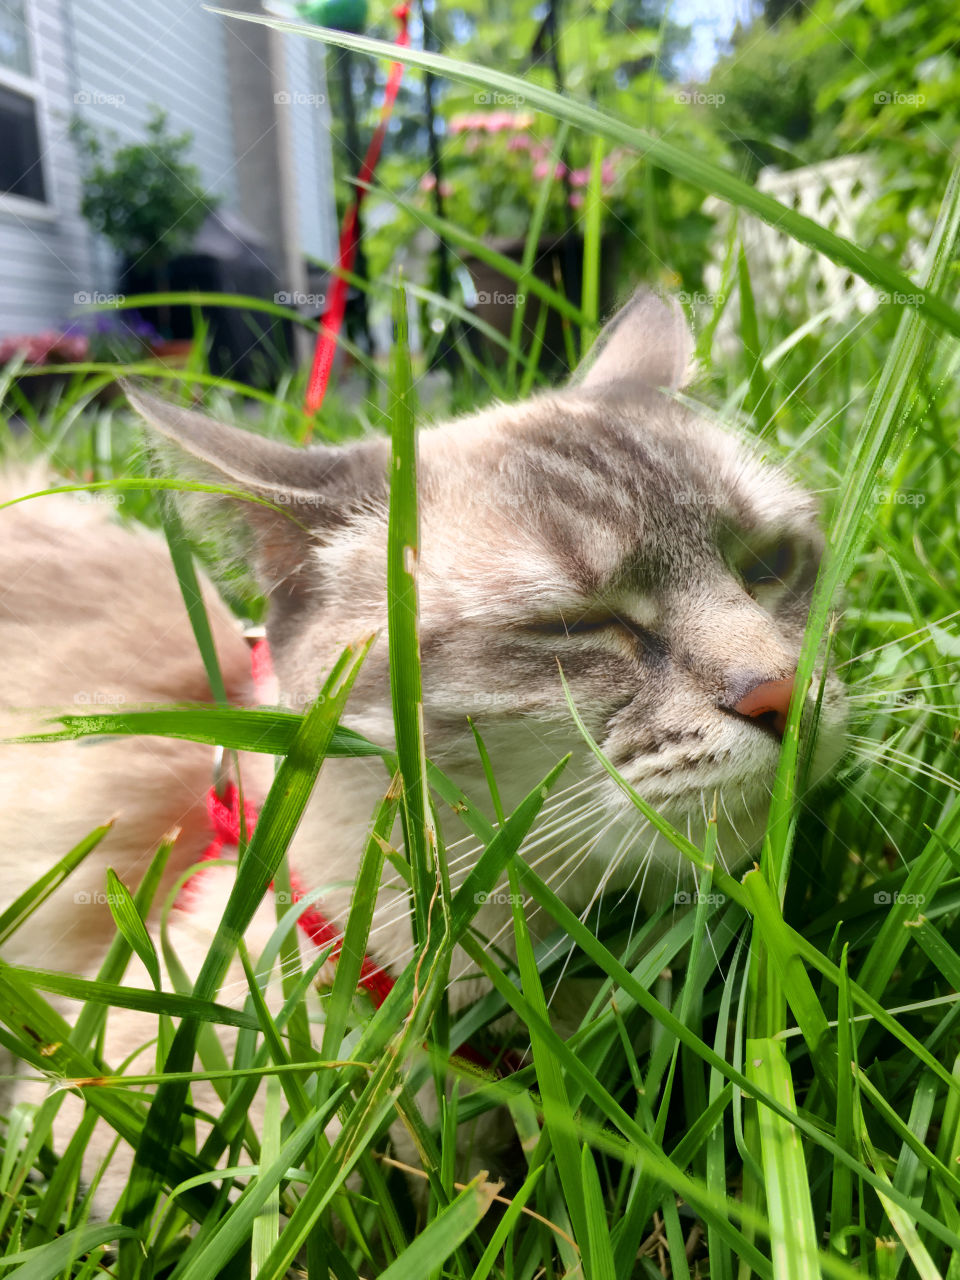 Meeka enjoying a Summer's day